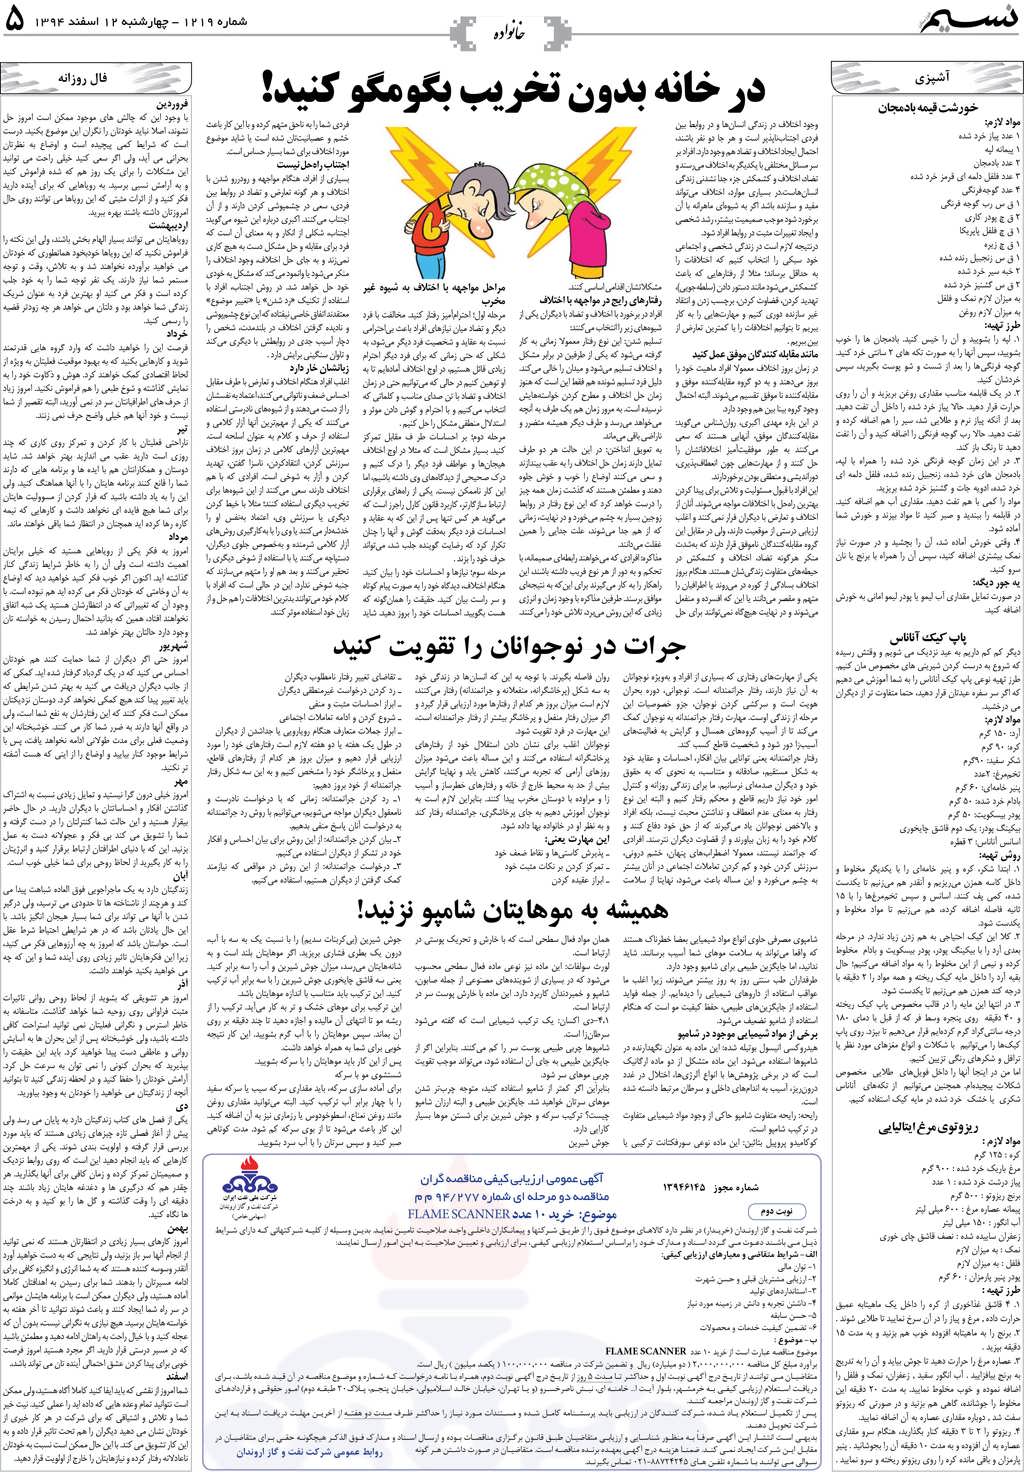 صفحه خانواده روزنامه نسیم شماره 1219